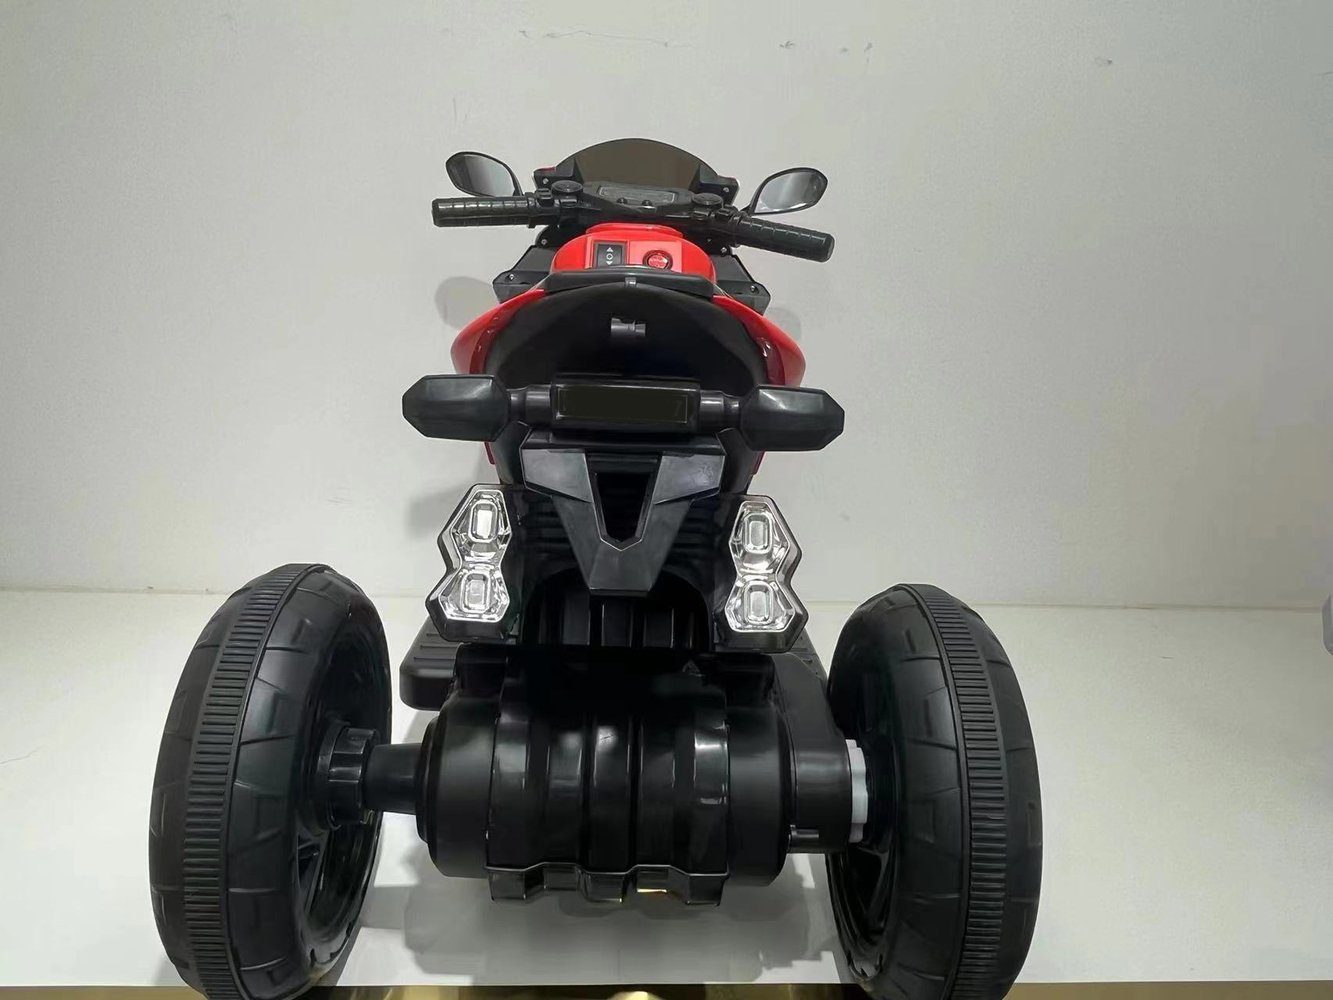 2x380W Elektromotorrad 6V Kinderfahrzeug Elektro-Kindermotorrad BoGi Rot